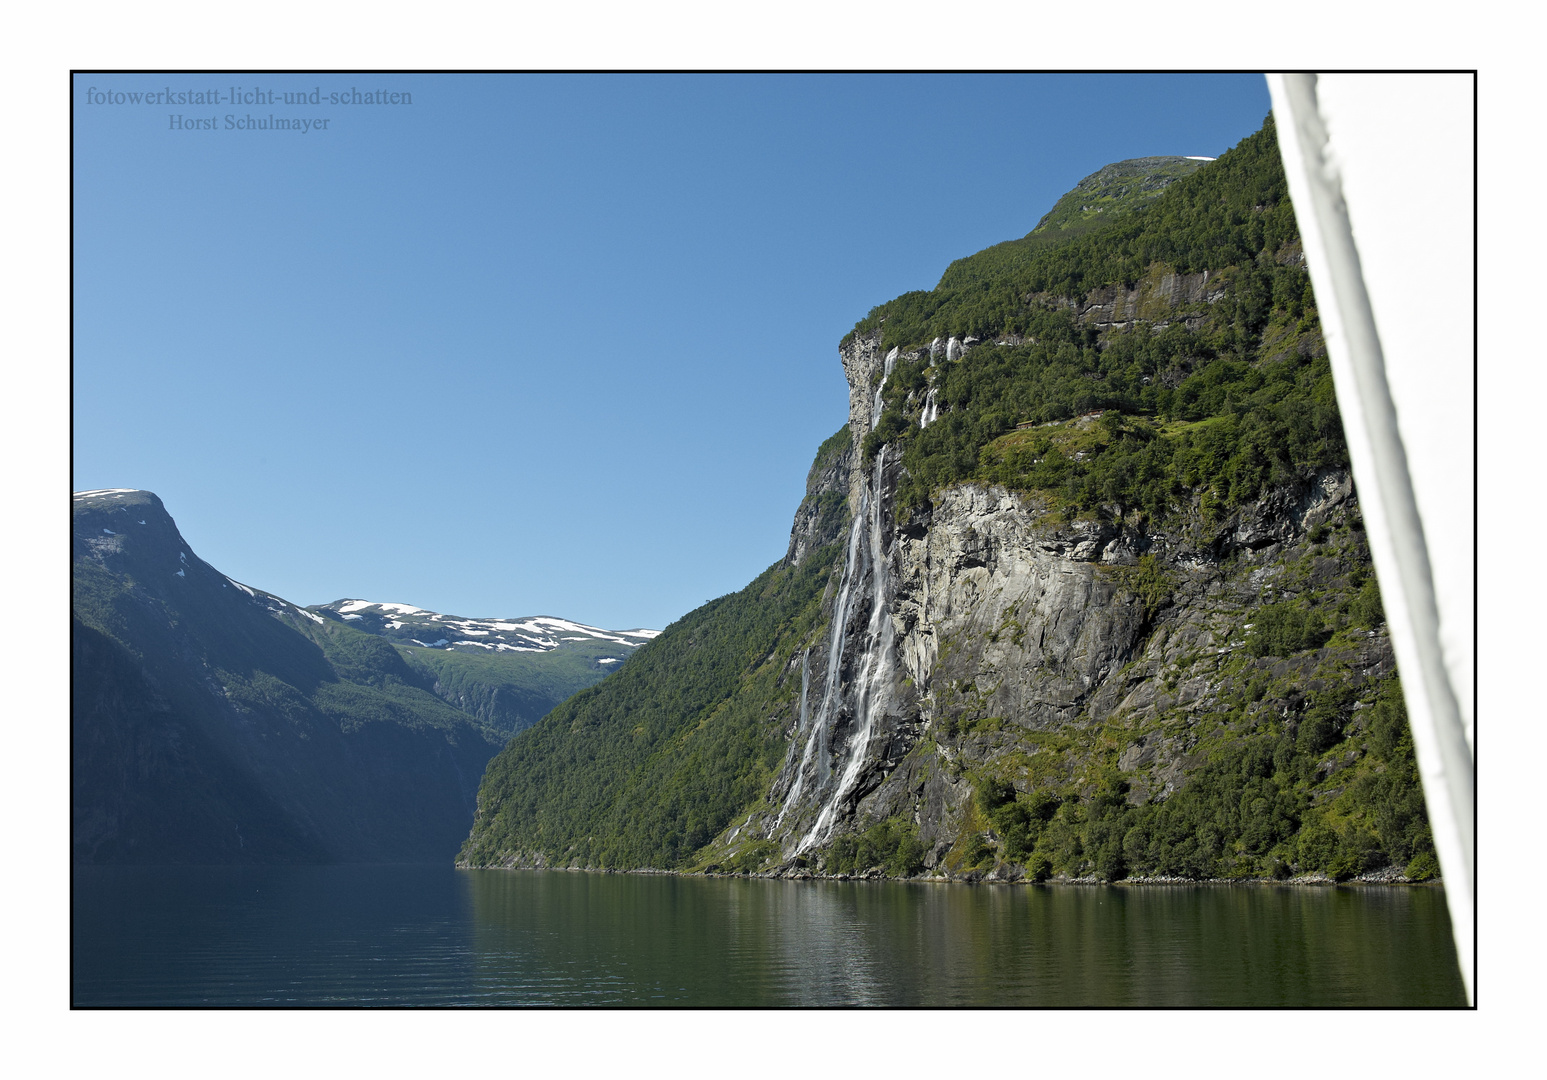 Die sieben Schwestern - Geirangerfjord, Norwegen